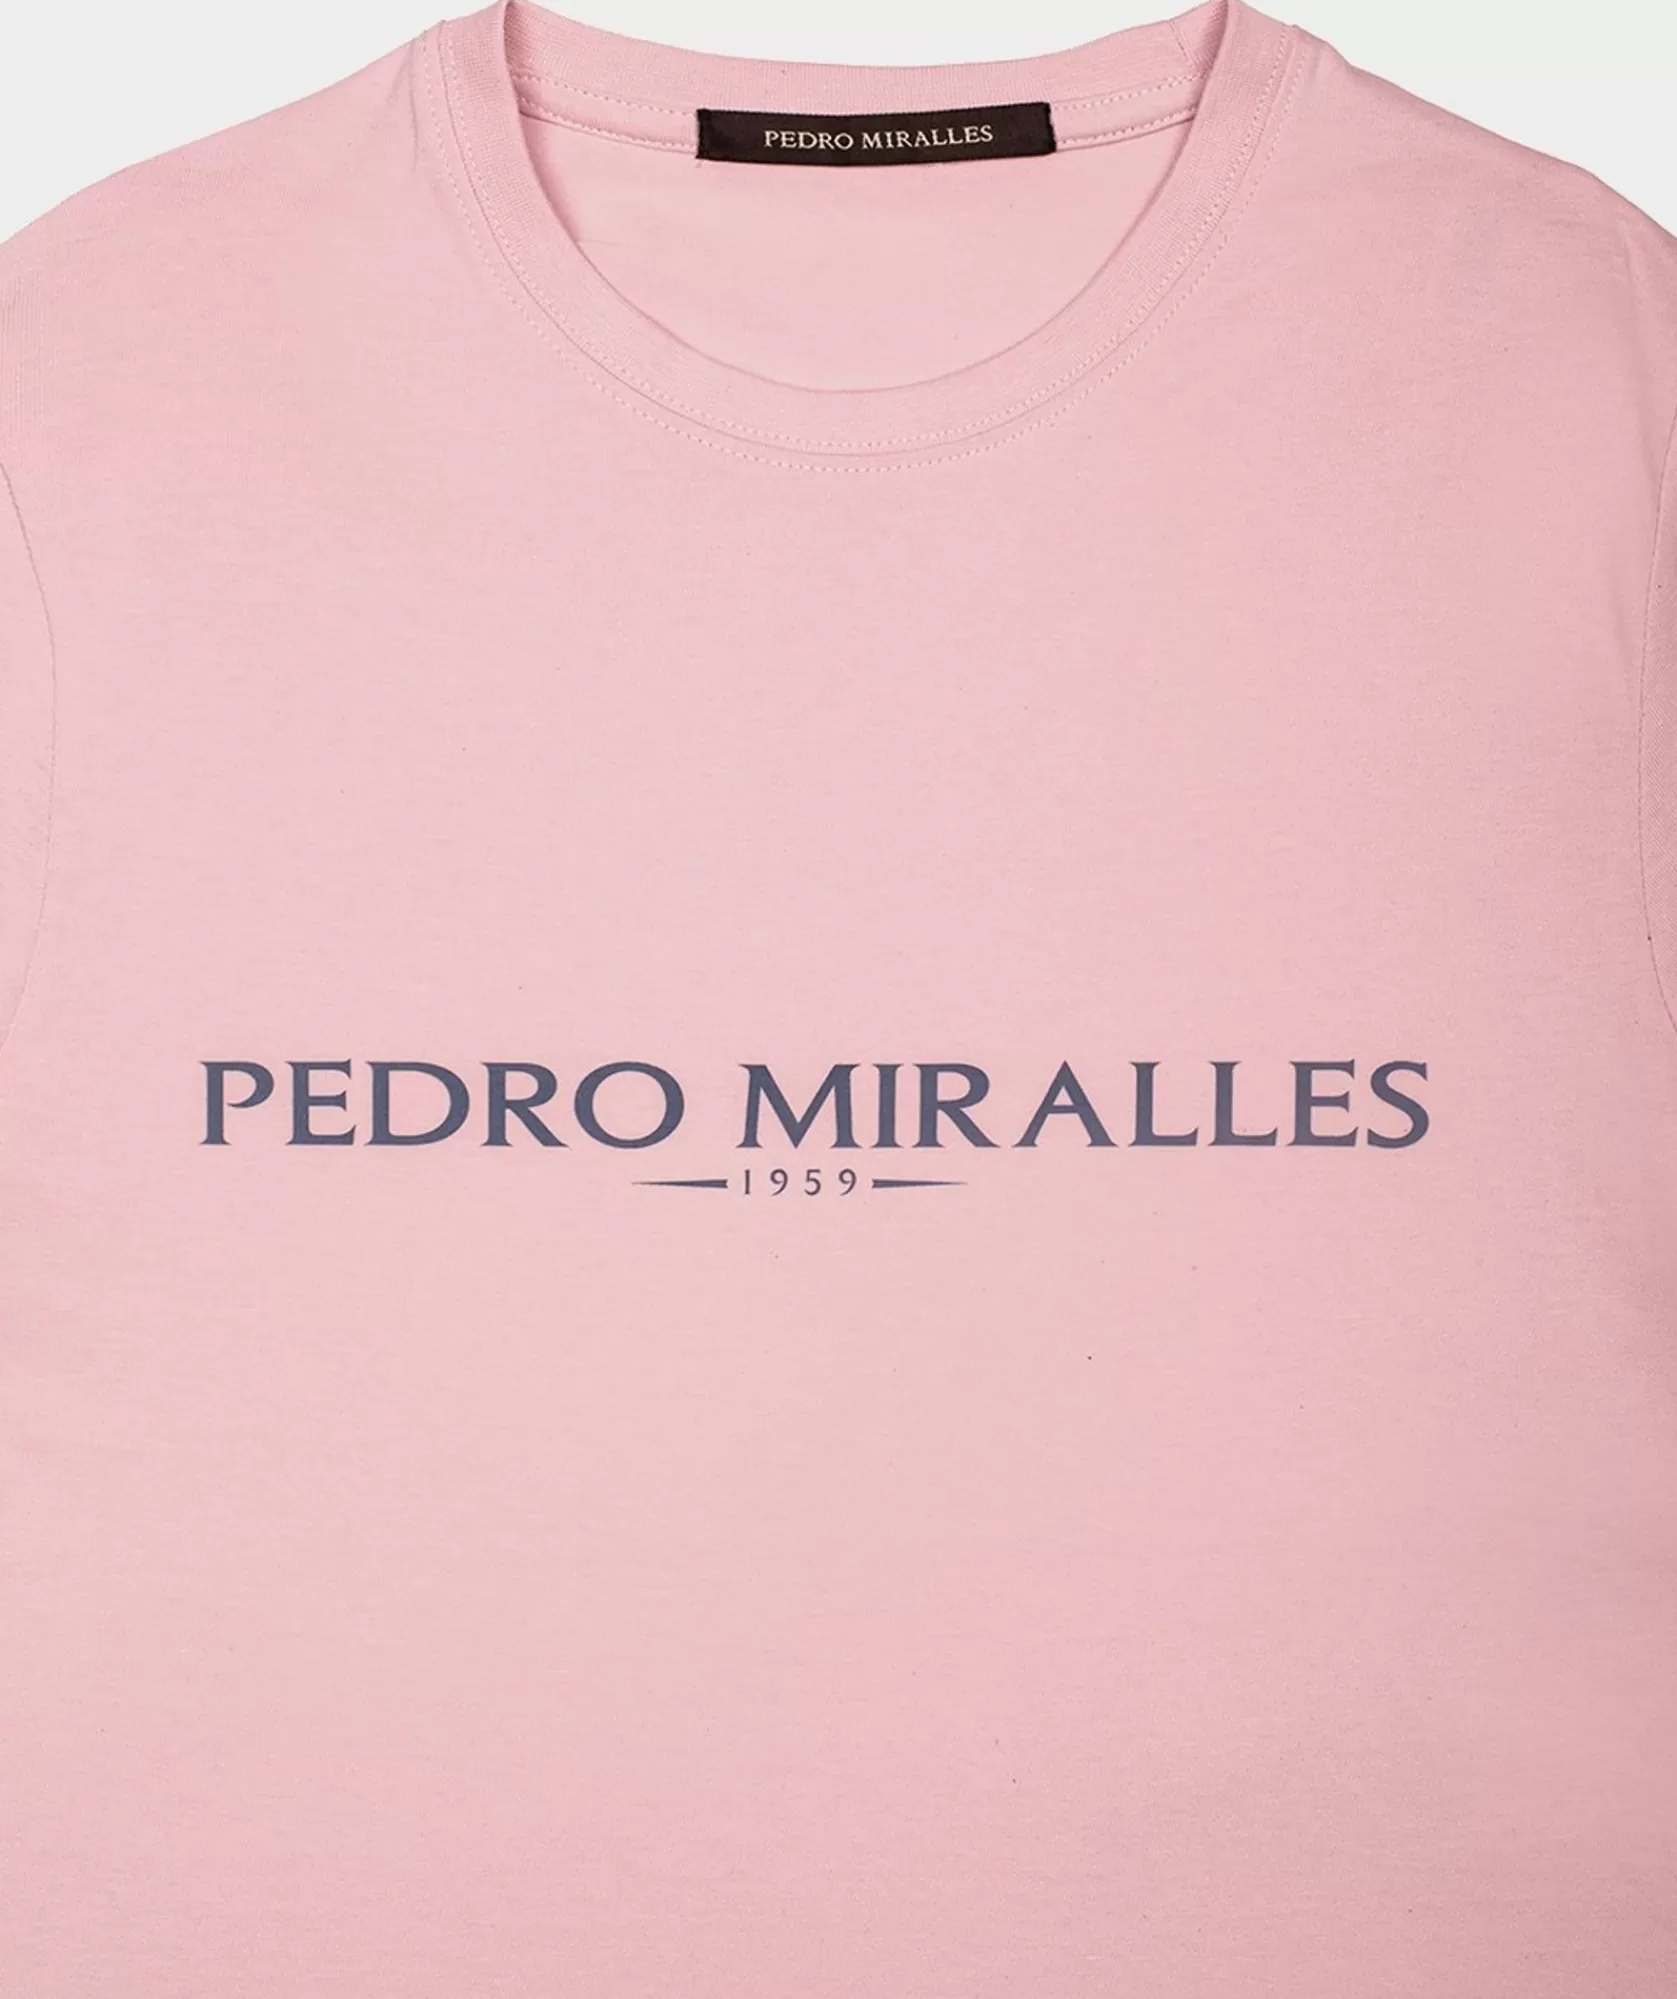 Bolsos Y Accesorios Pedro Miralles Camiseta De Algodon Y Poliester De Esterilla Yoga